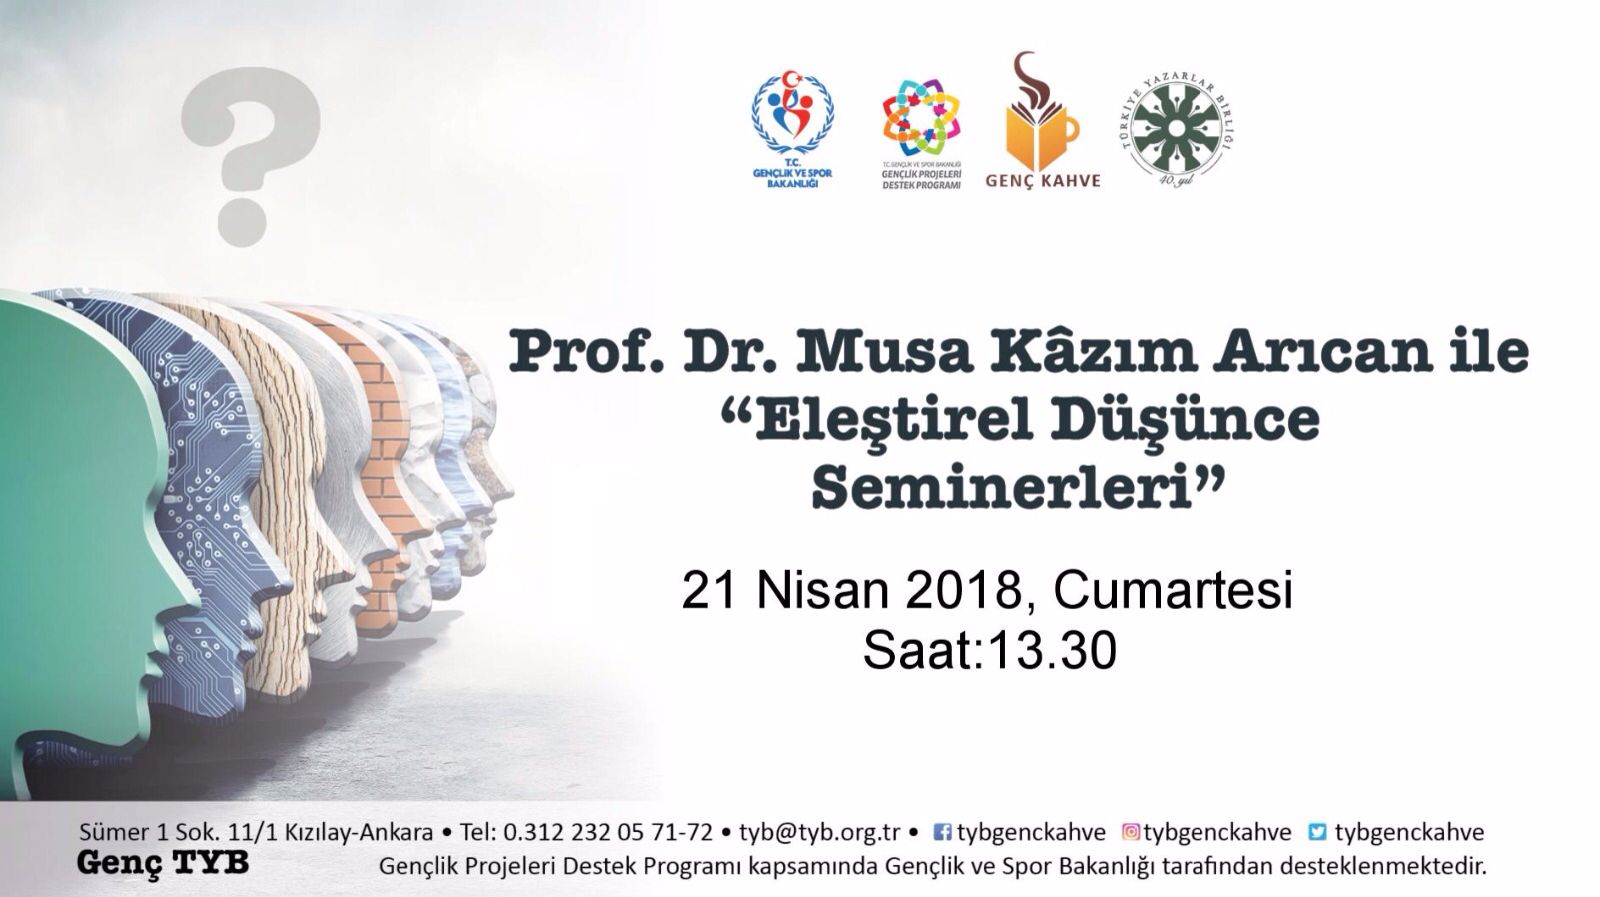 Prof. Dr. Musa Kazım Arıcan ile Eleştirel Düşünce Seminerleri